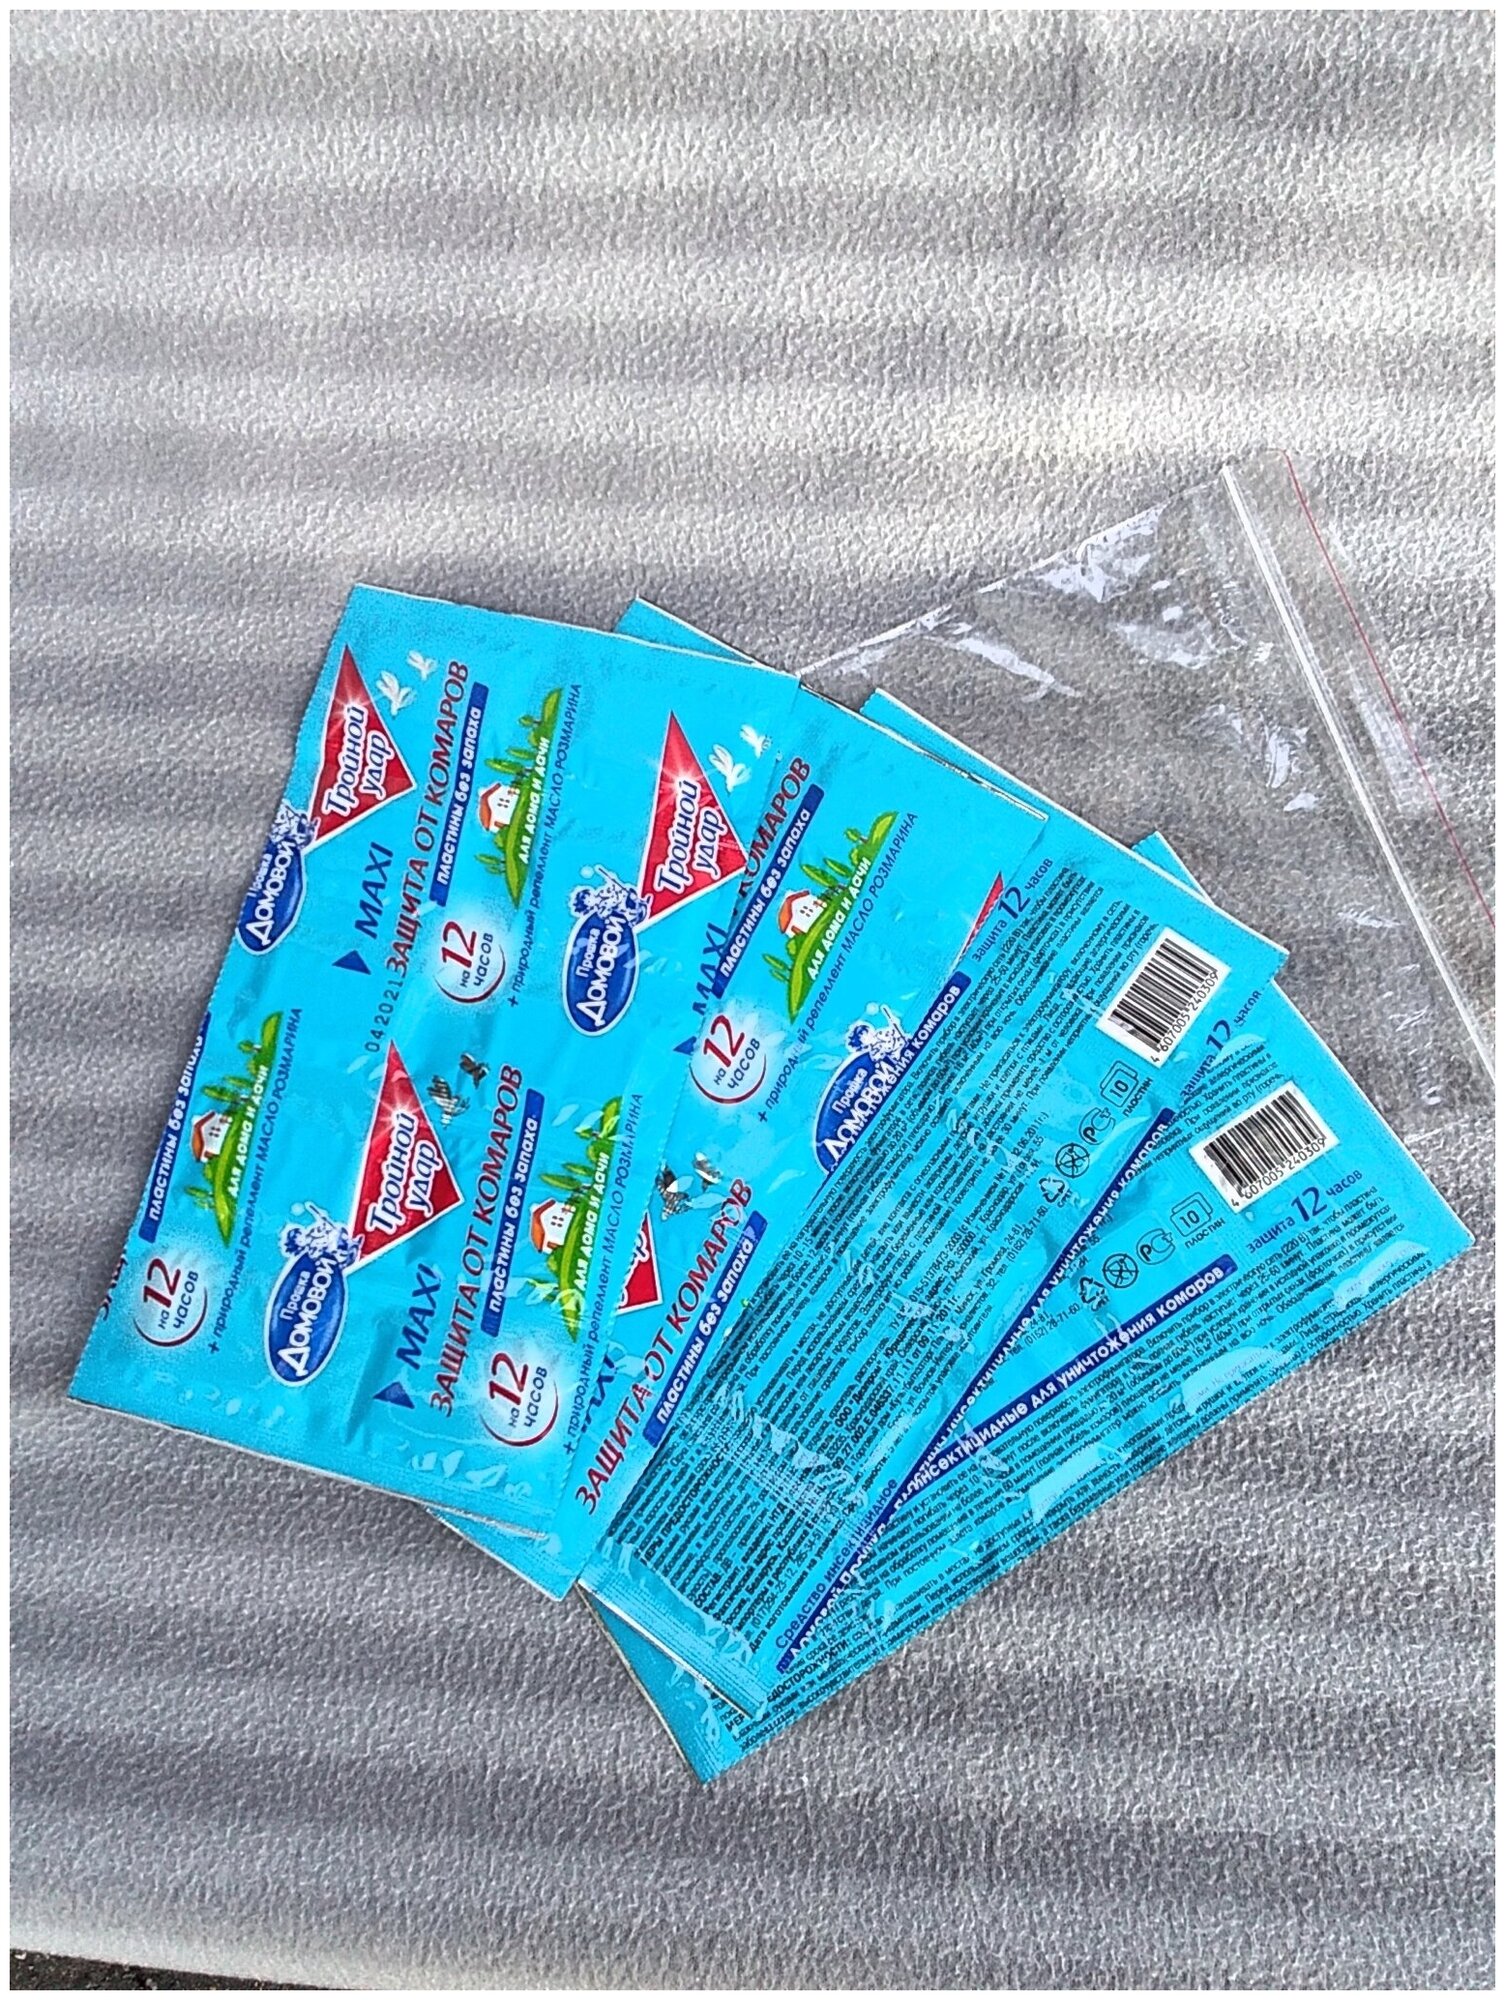 10 пластин от комаров тройной удар для электрофумигатора в герметичной полимерной упаковке - 4 шт. Комплект.